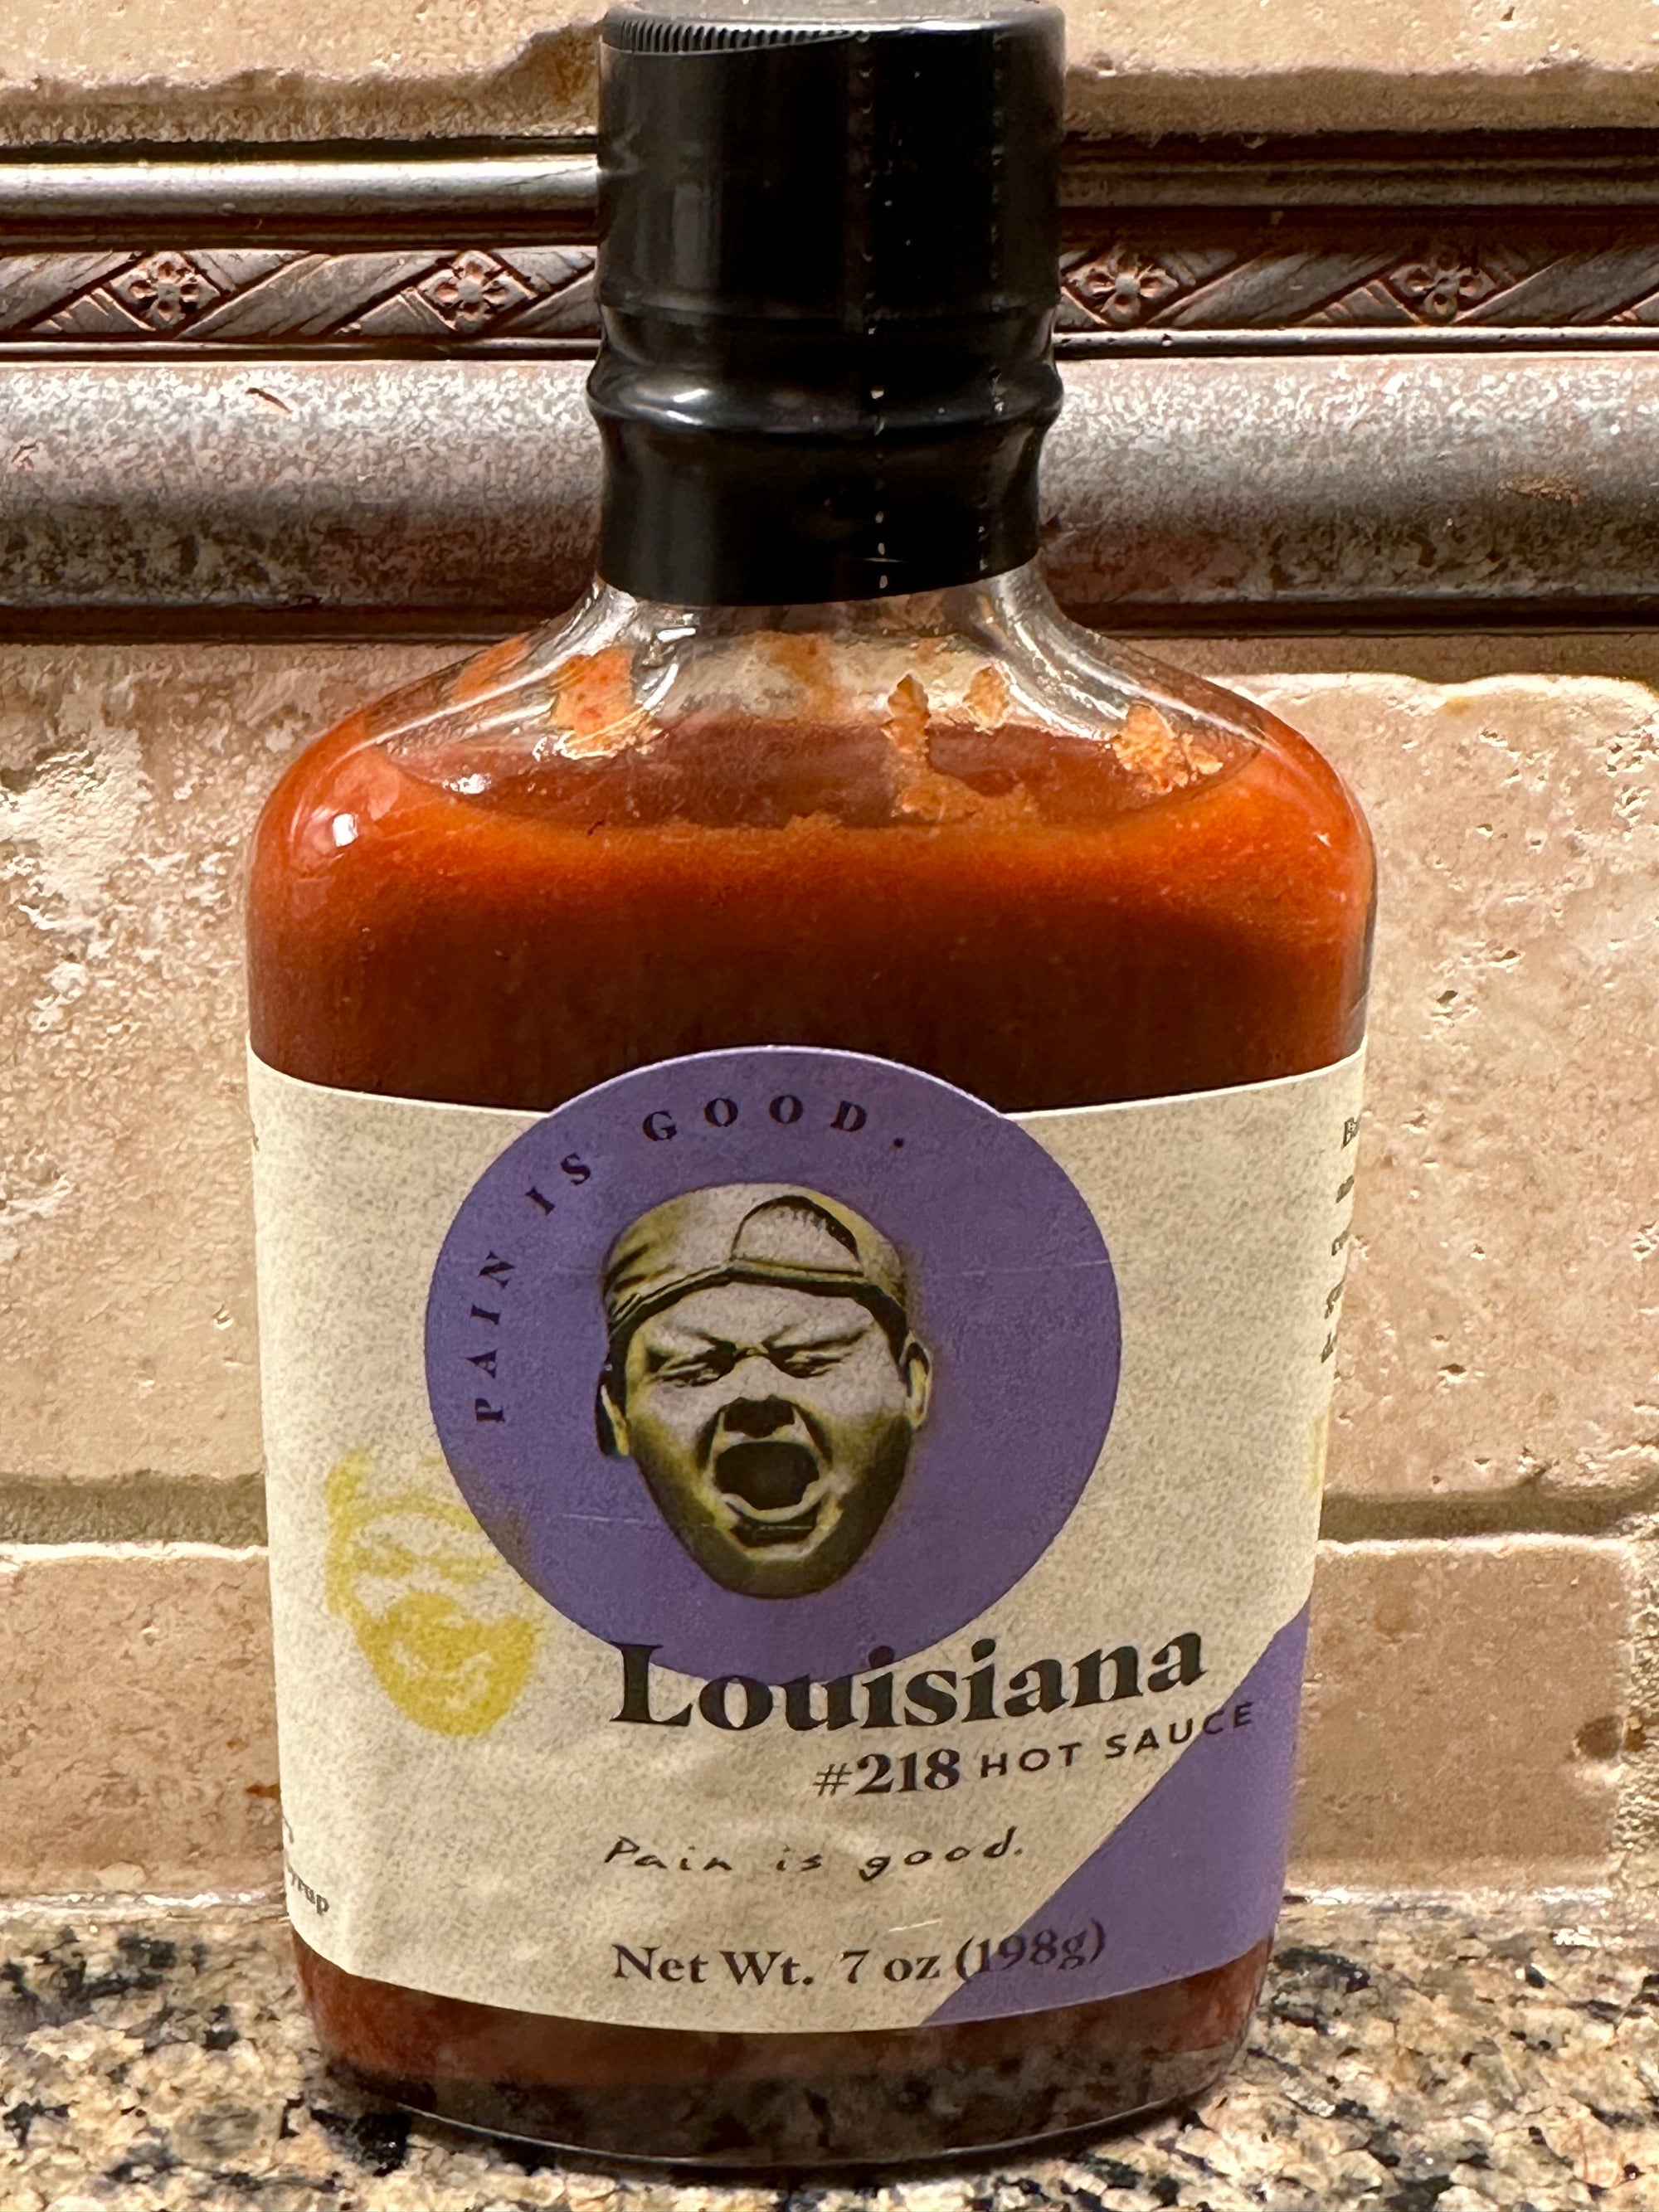 Pain is Good Louisiana Style Hot Sauce